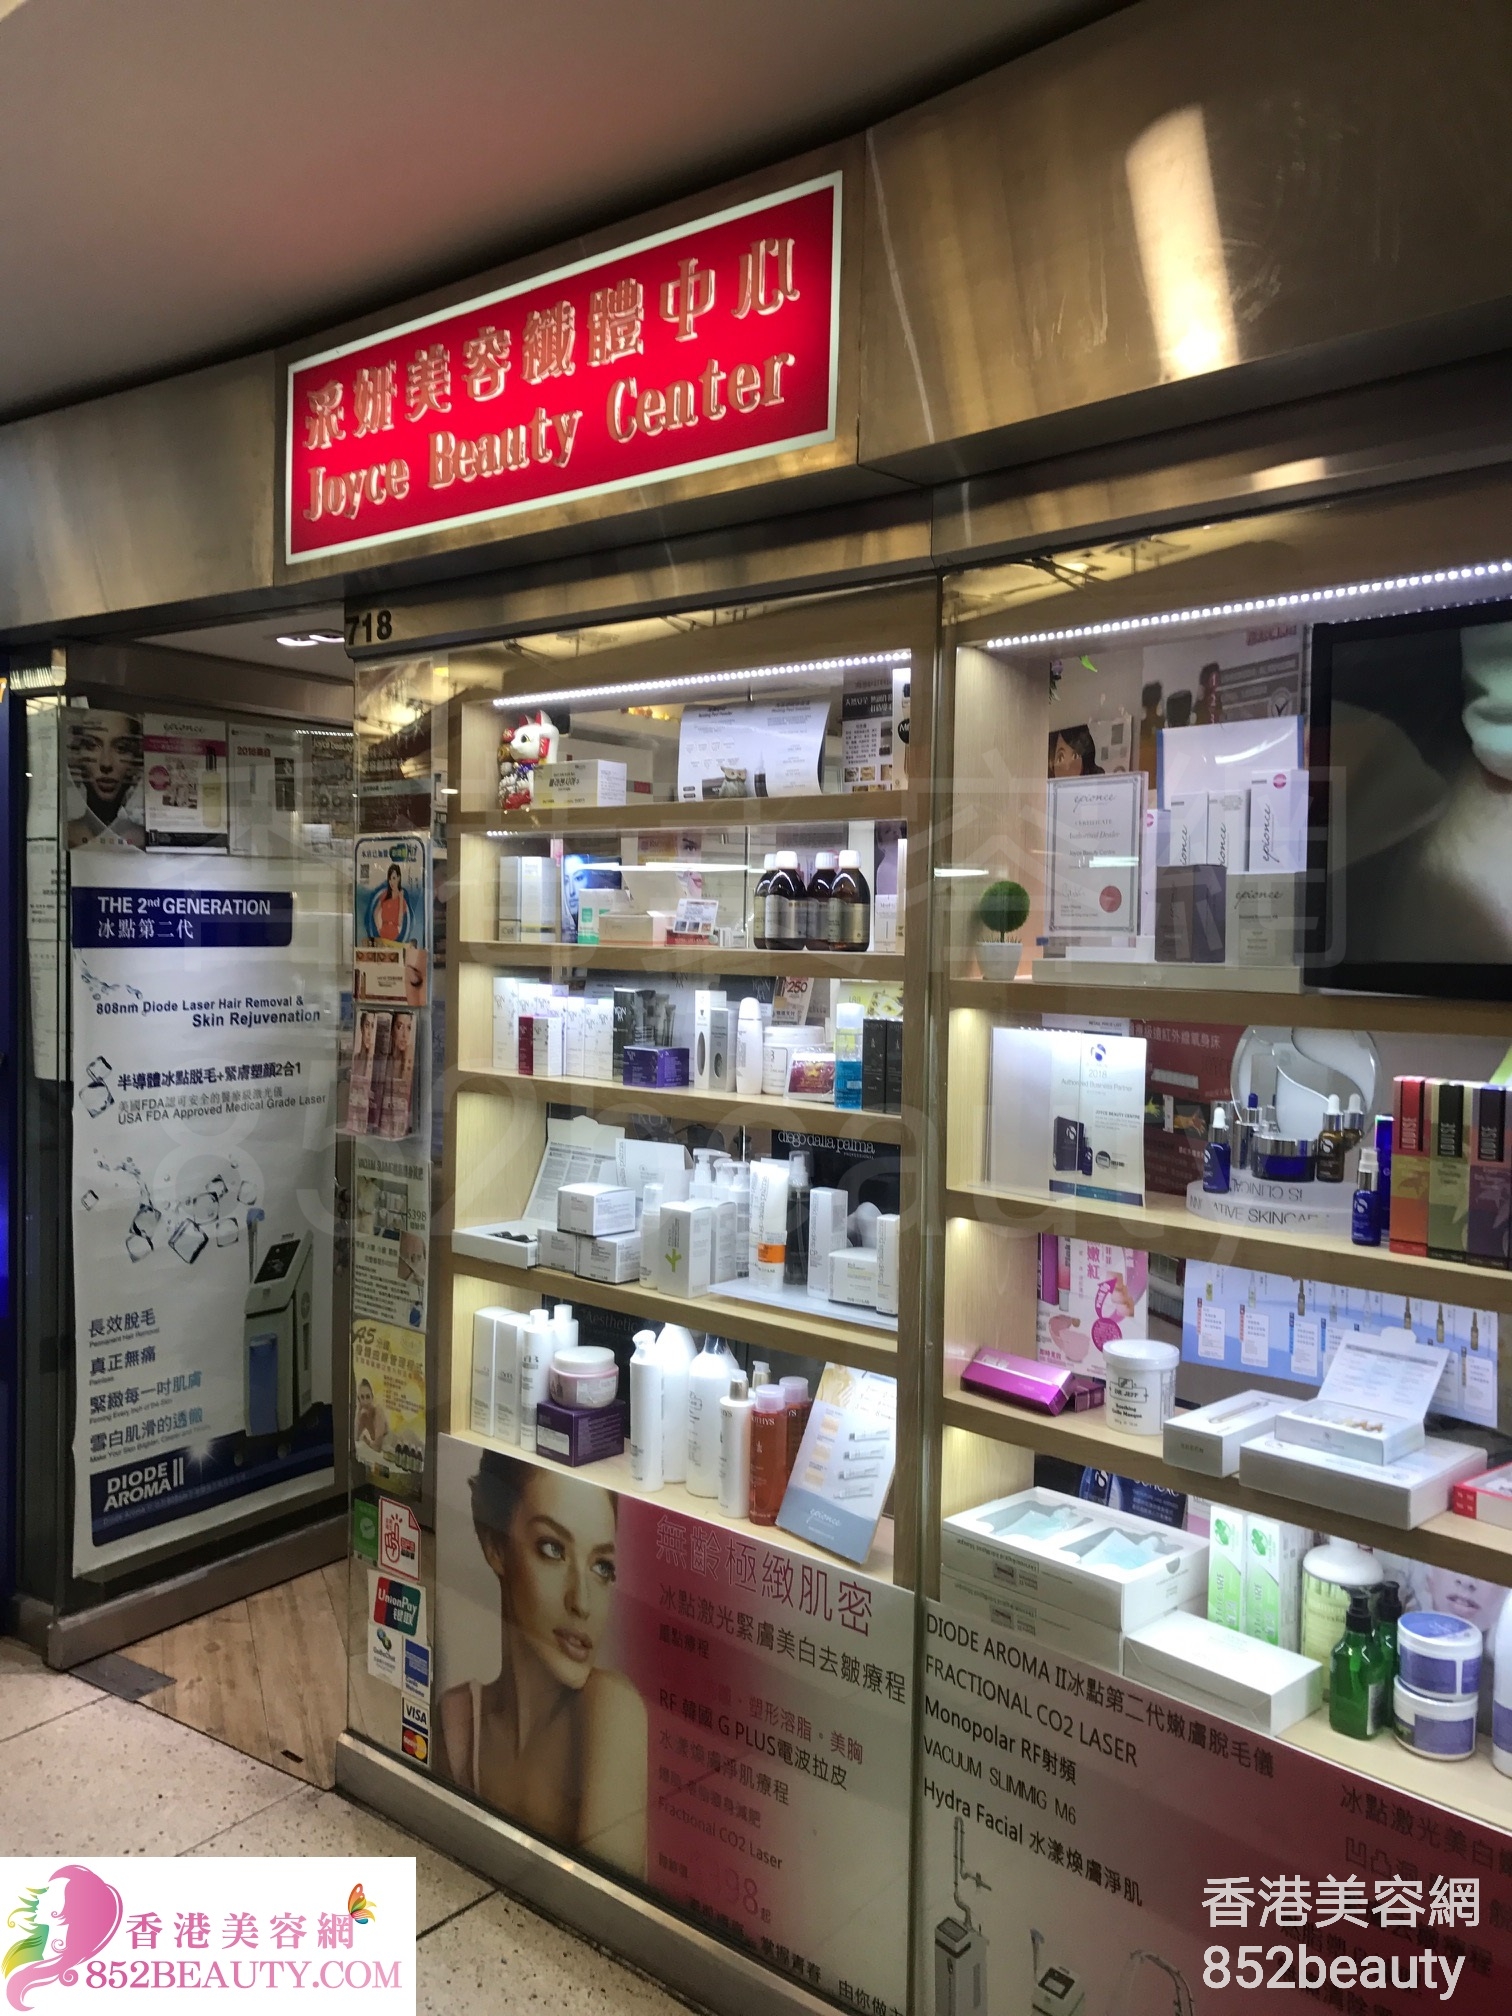 面部護理: 采妍美容纖體中心 Joyce Beauty Center (西九龍中心)